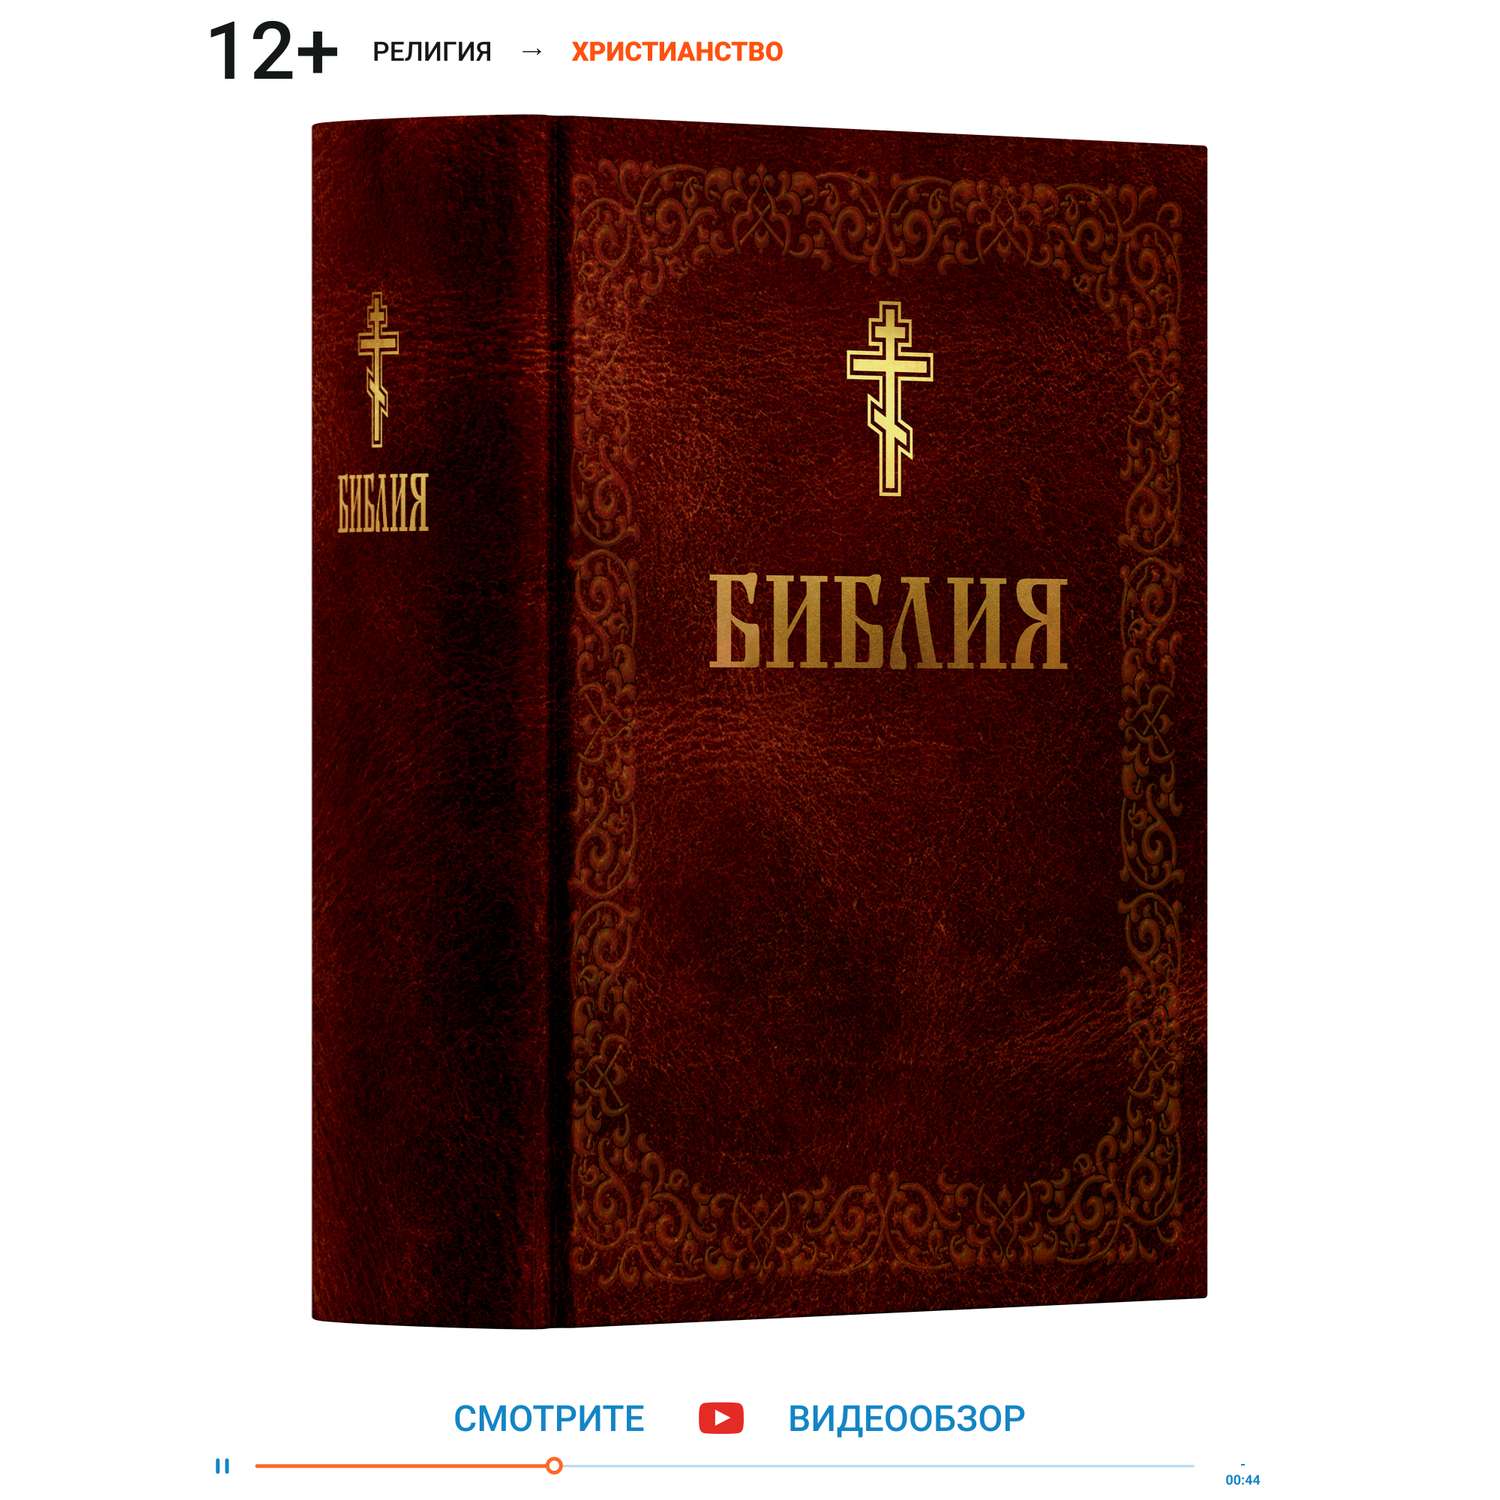 Книга Харвест Книга православная Библия Новый и Ветхий завет Священного Писания коричневая - фото 1